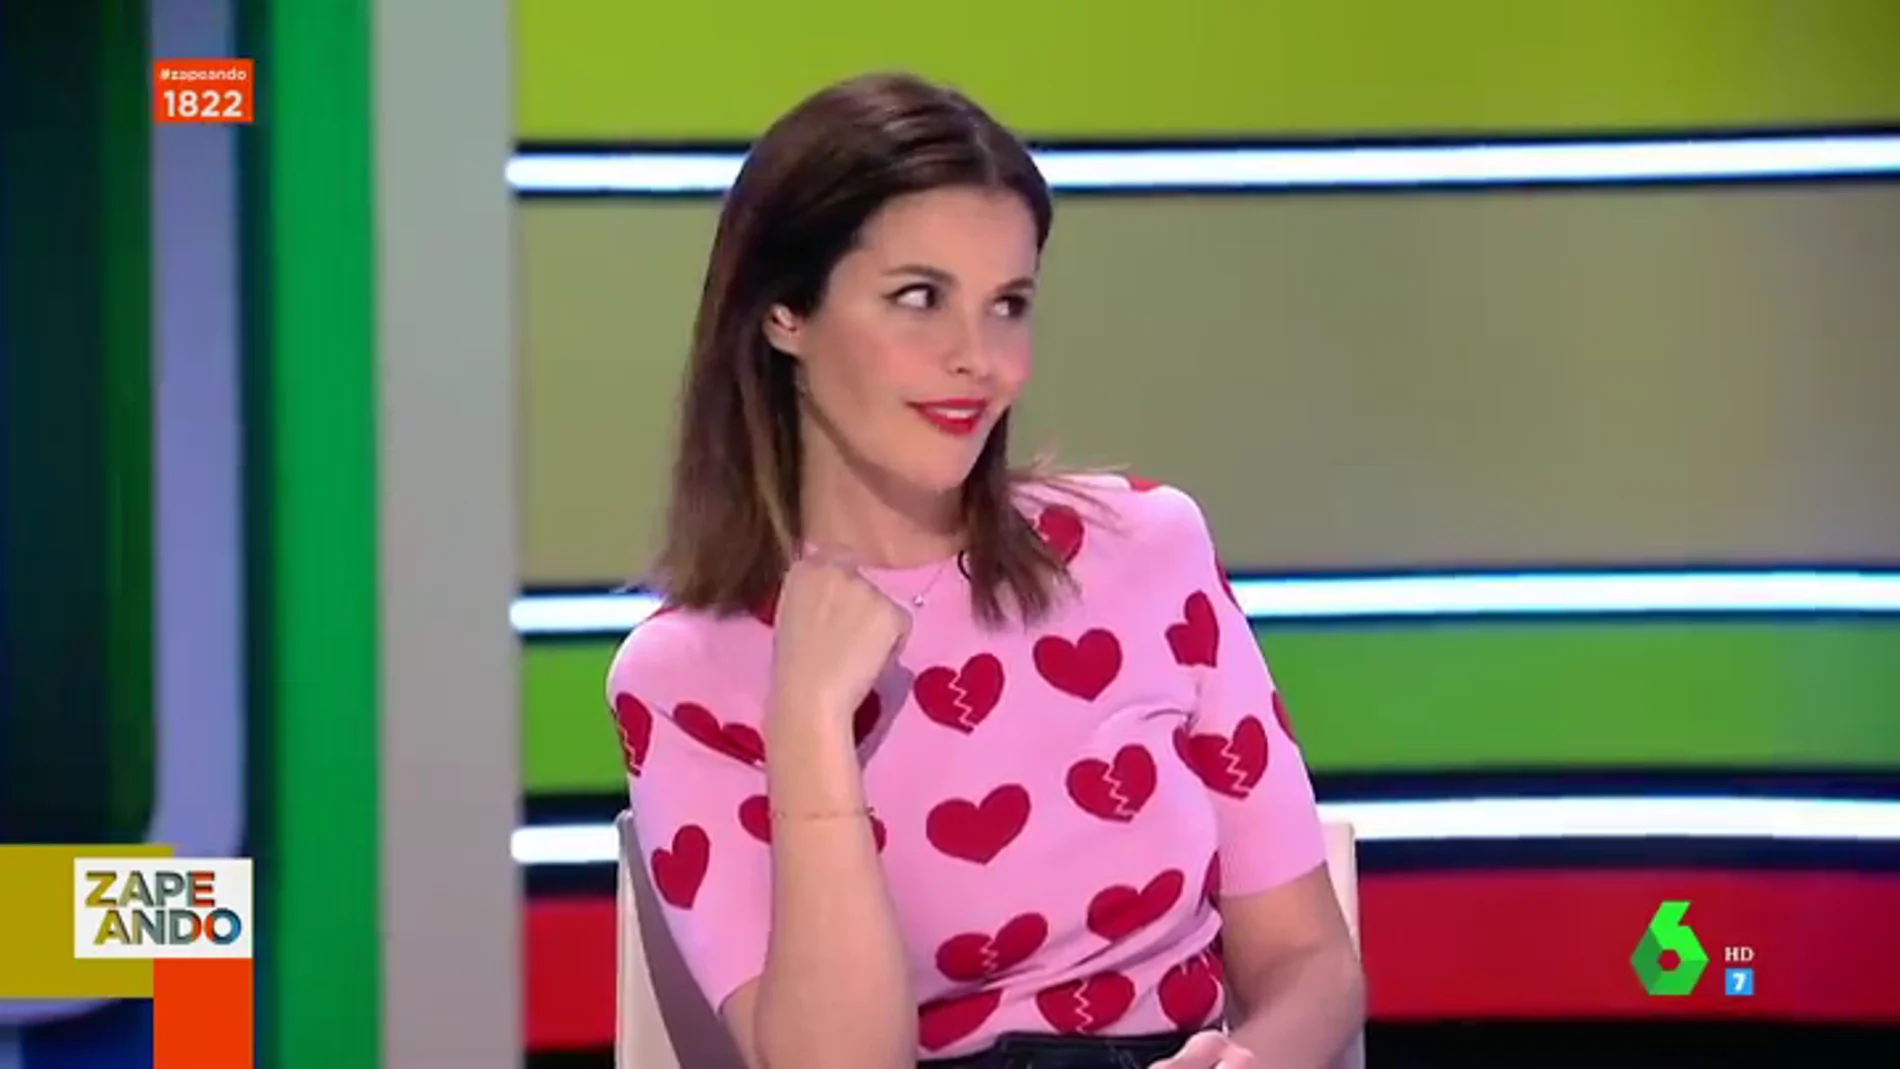 La divertida reacción de Marta Torné cuando Dani Mateo le pone morritos en directo: "Es mi favorita"